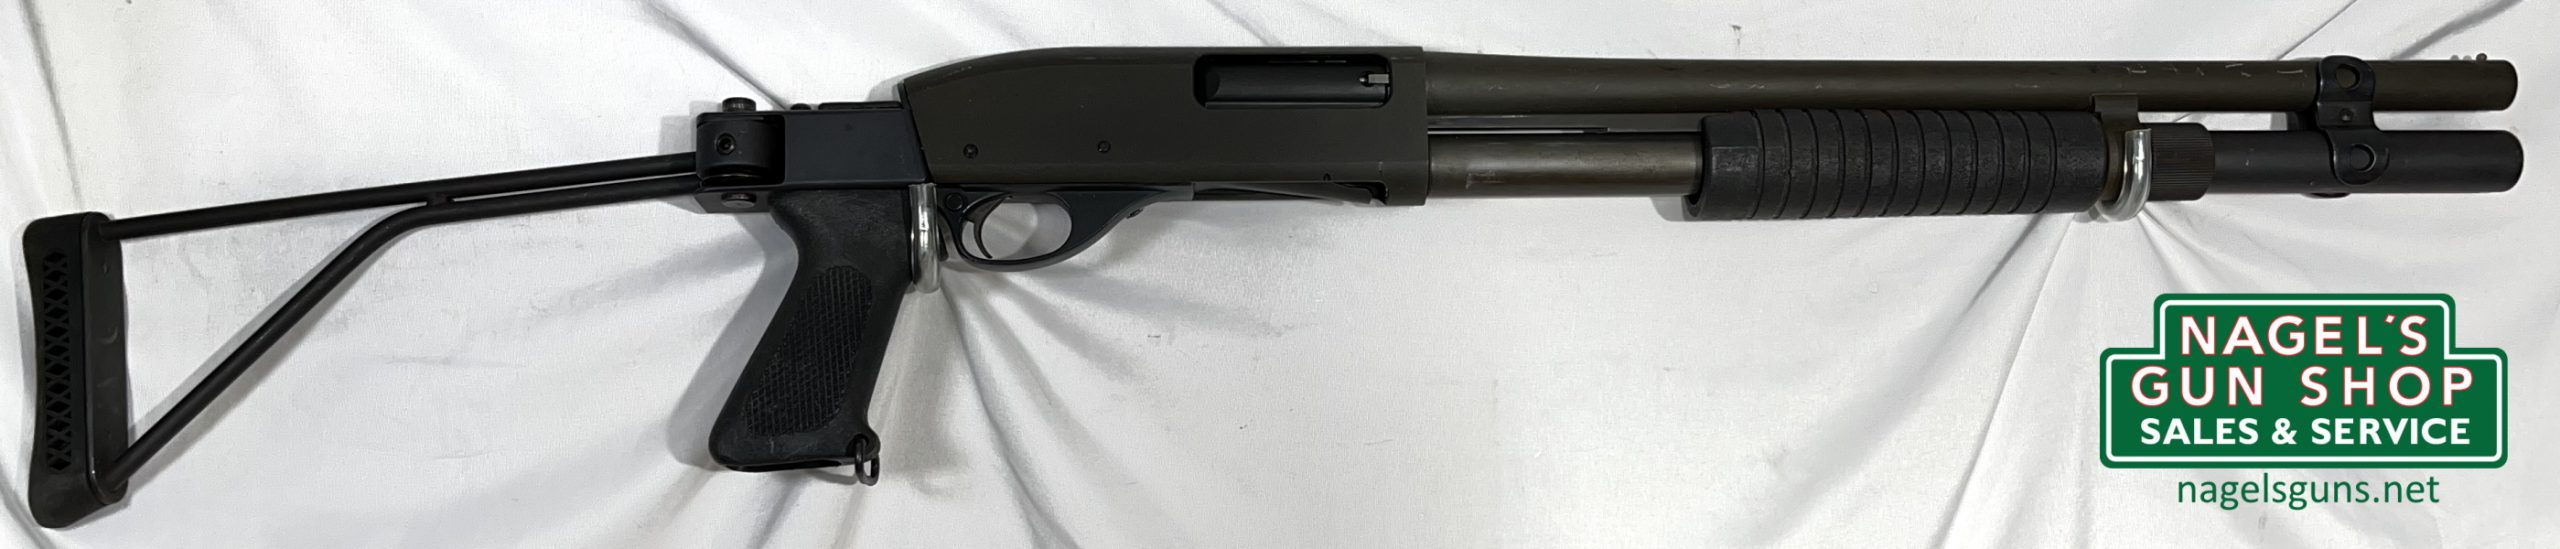 Smith & Wesson 3000 12Ga Shotgun